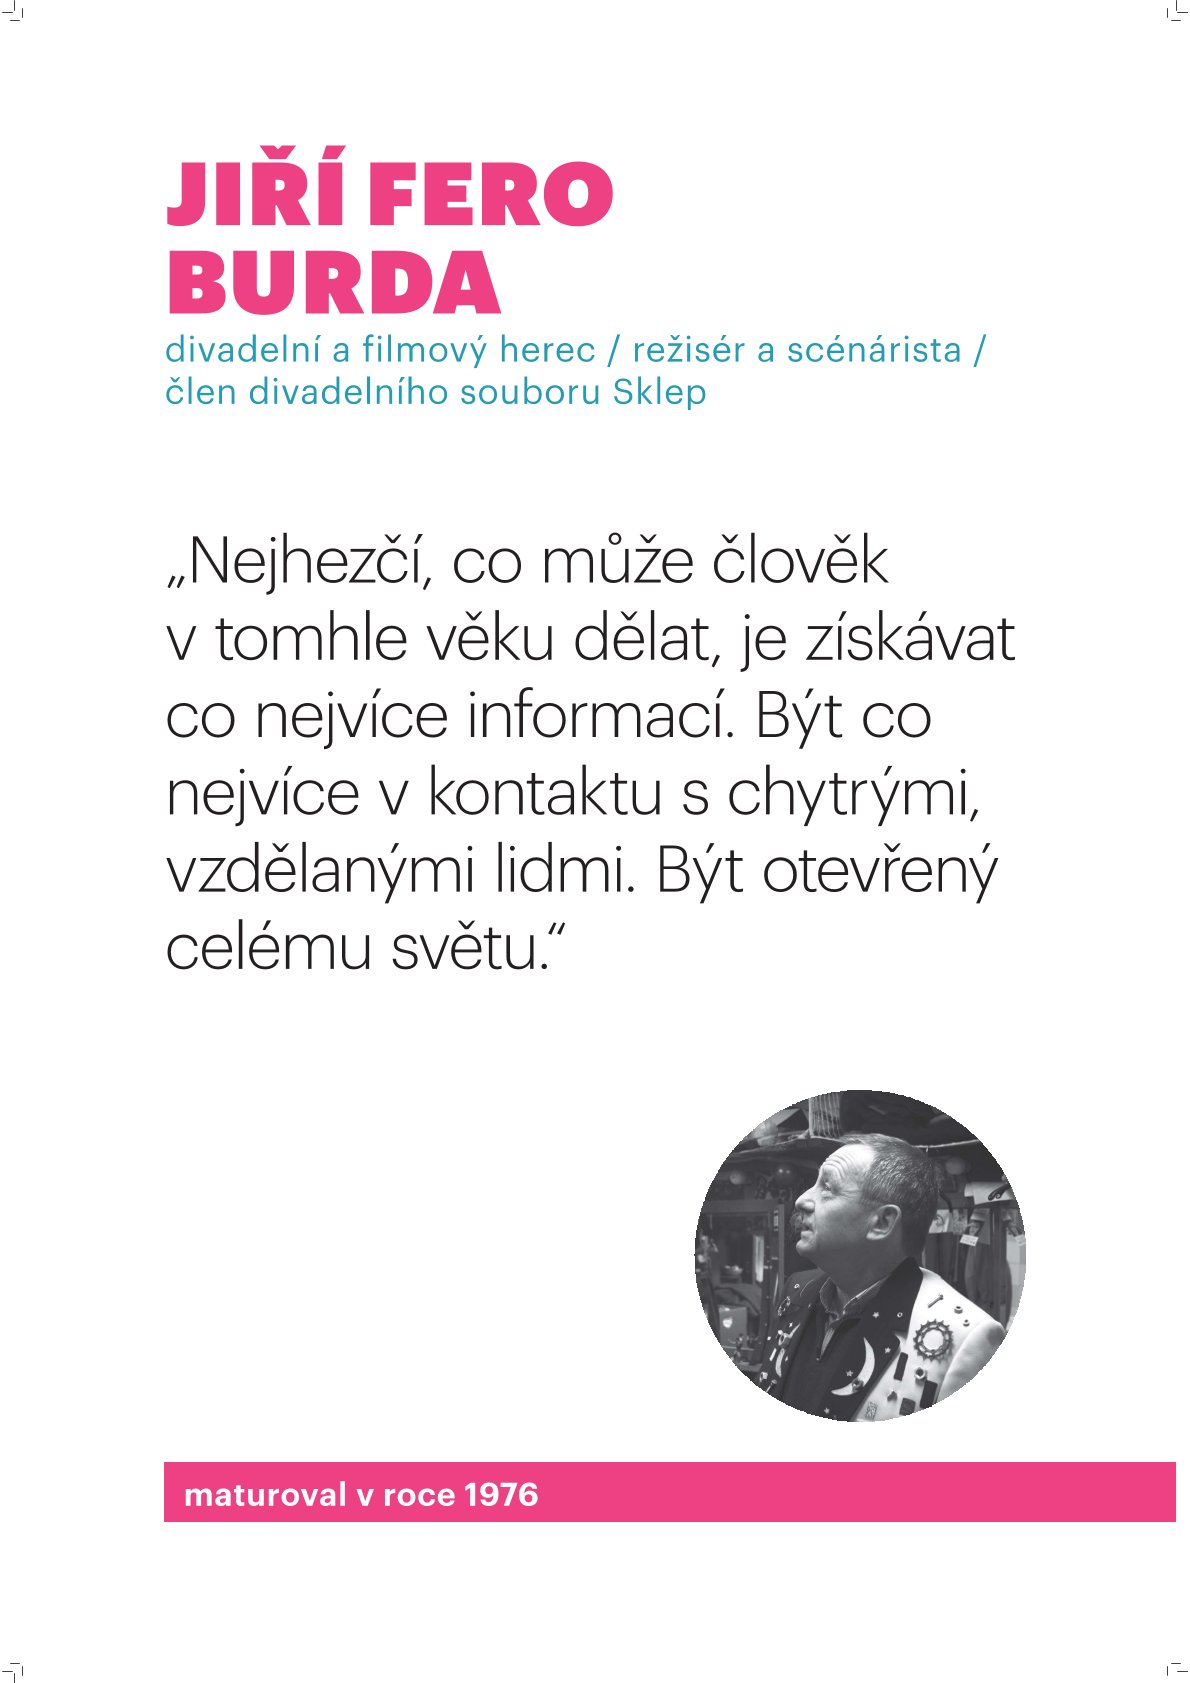 Jiří Fero Burda